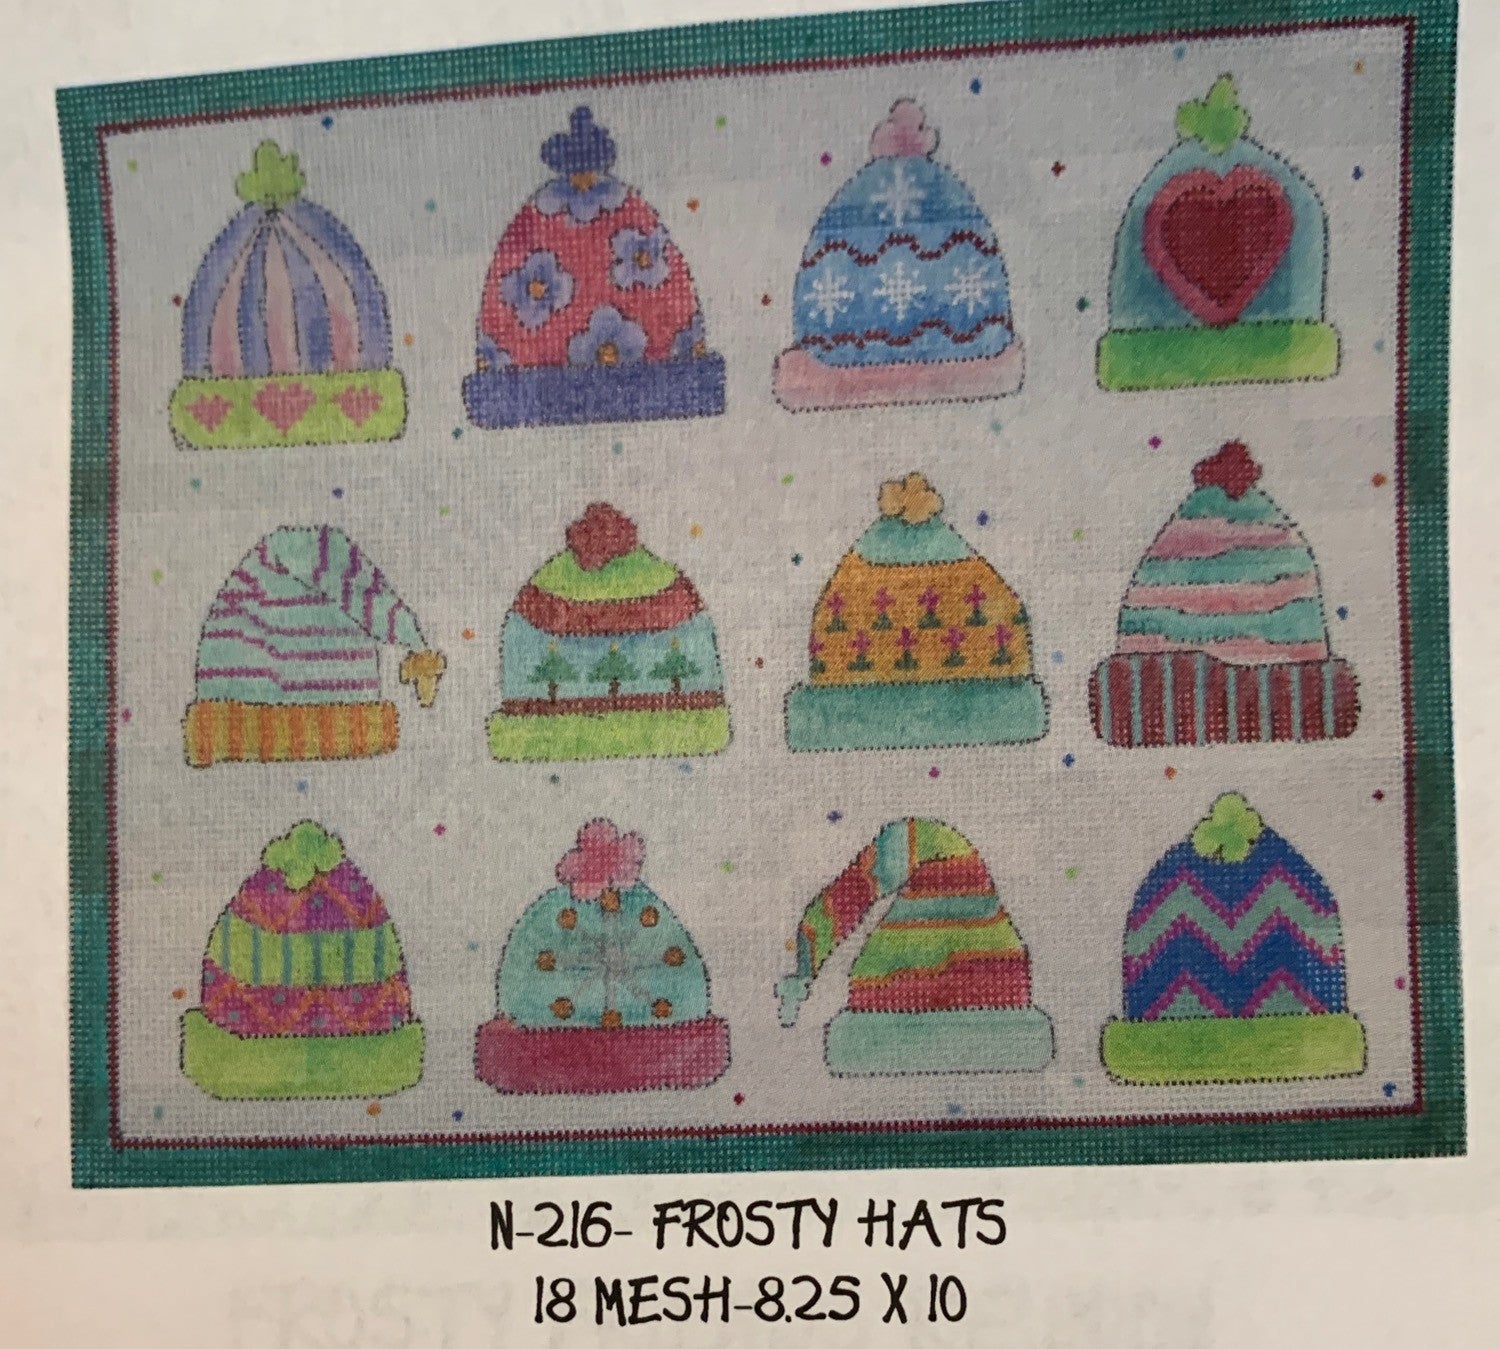 N-216 Frosty Hats